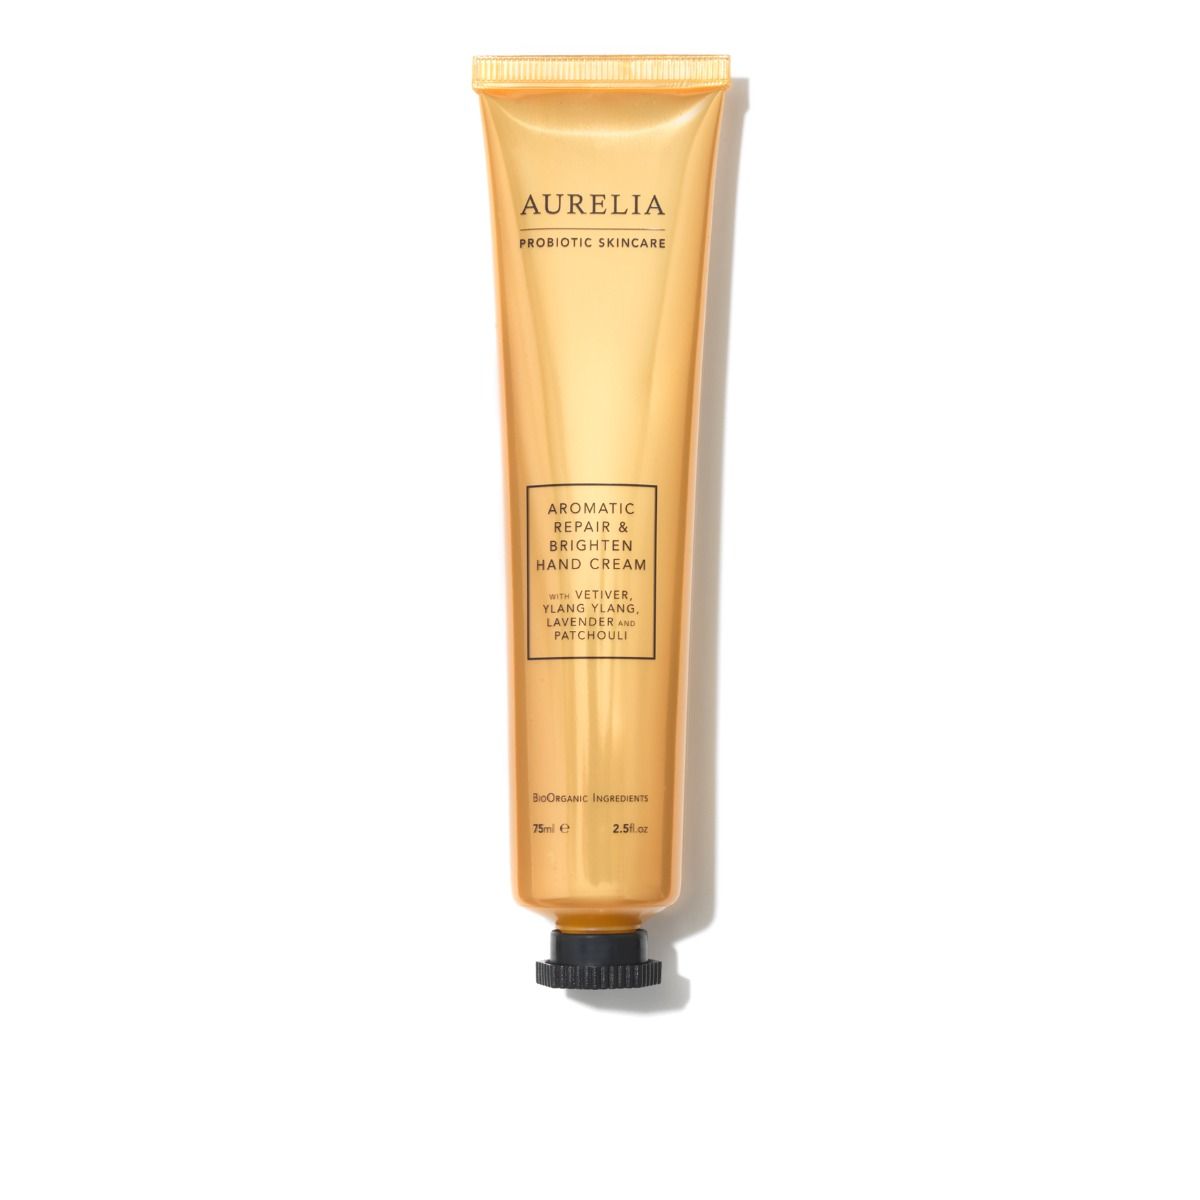 Aurelia Probiotic Skincare Aromatic Repair & Brighten Handcream 75ml